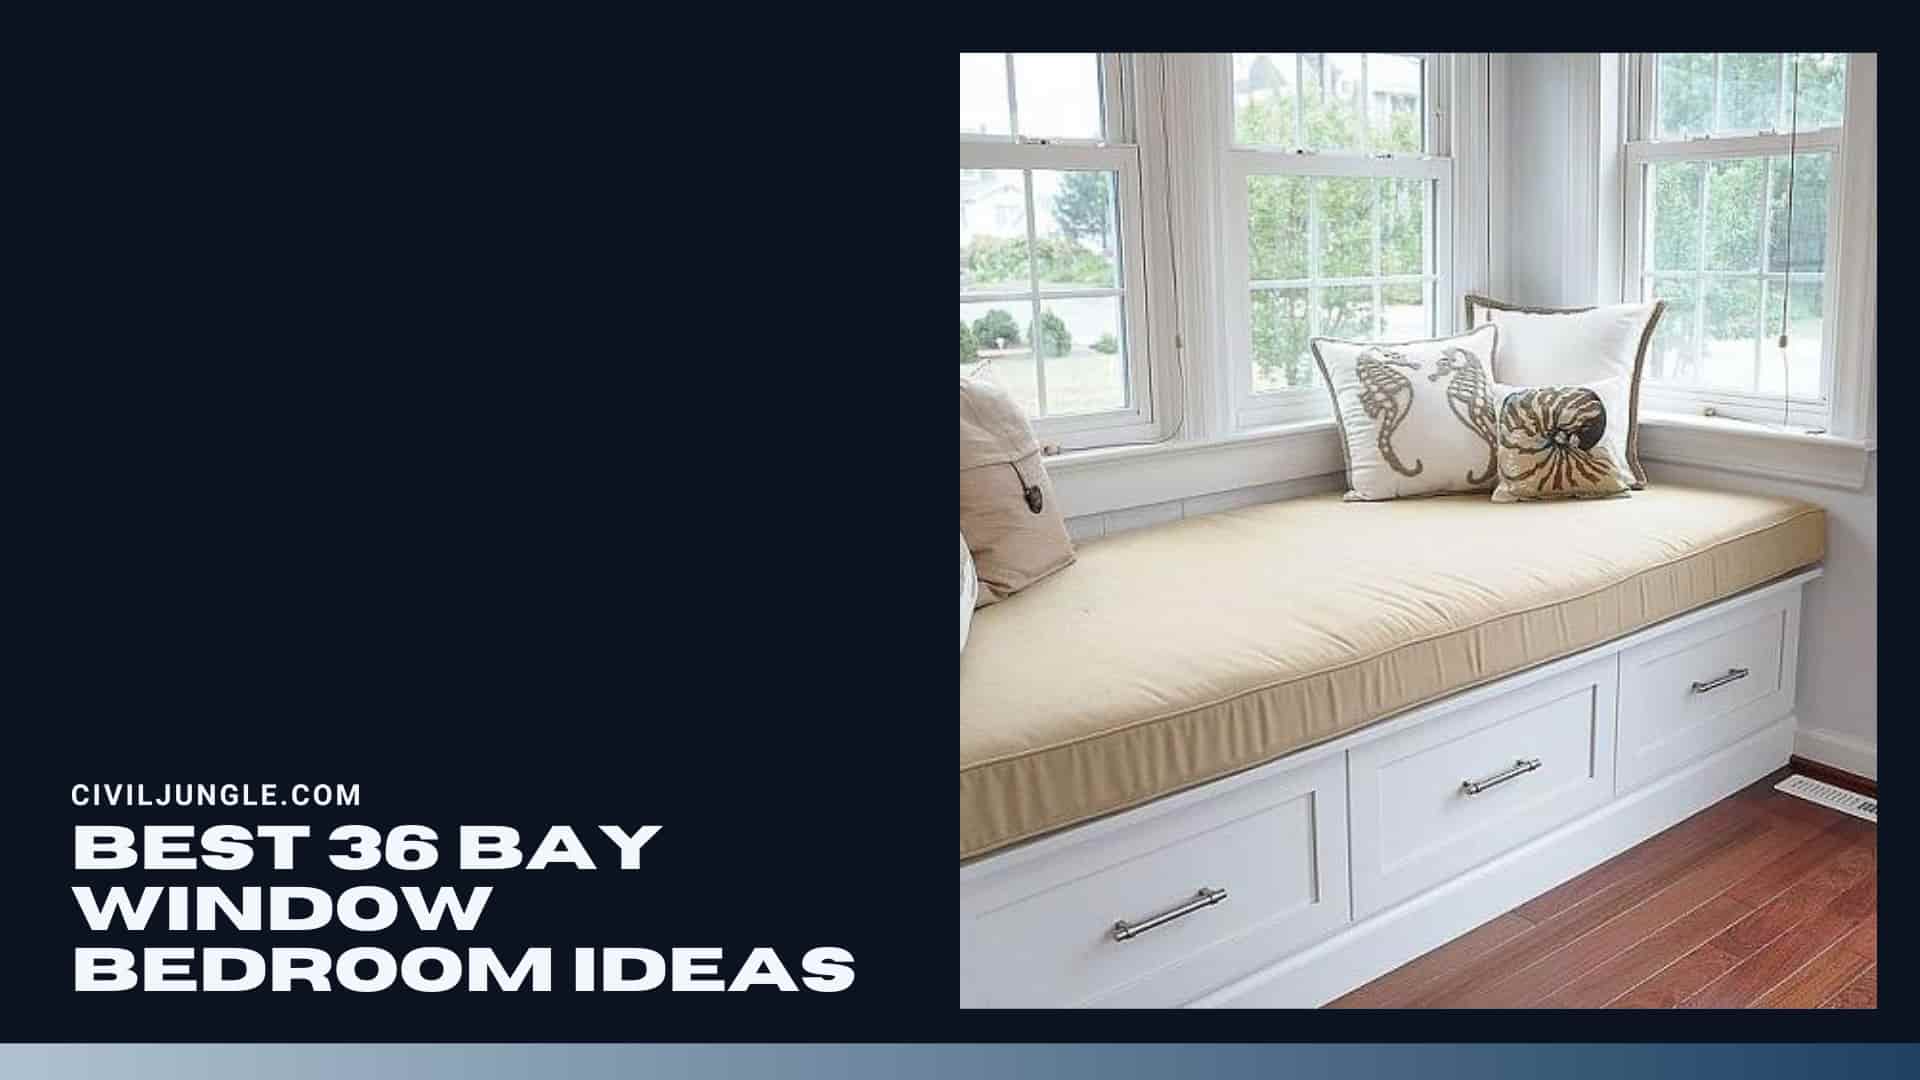 Best 36 Bay Window Bedroom Ideas